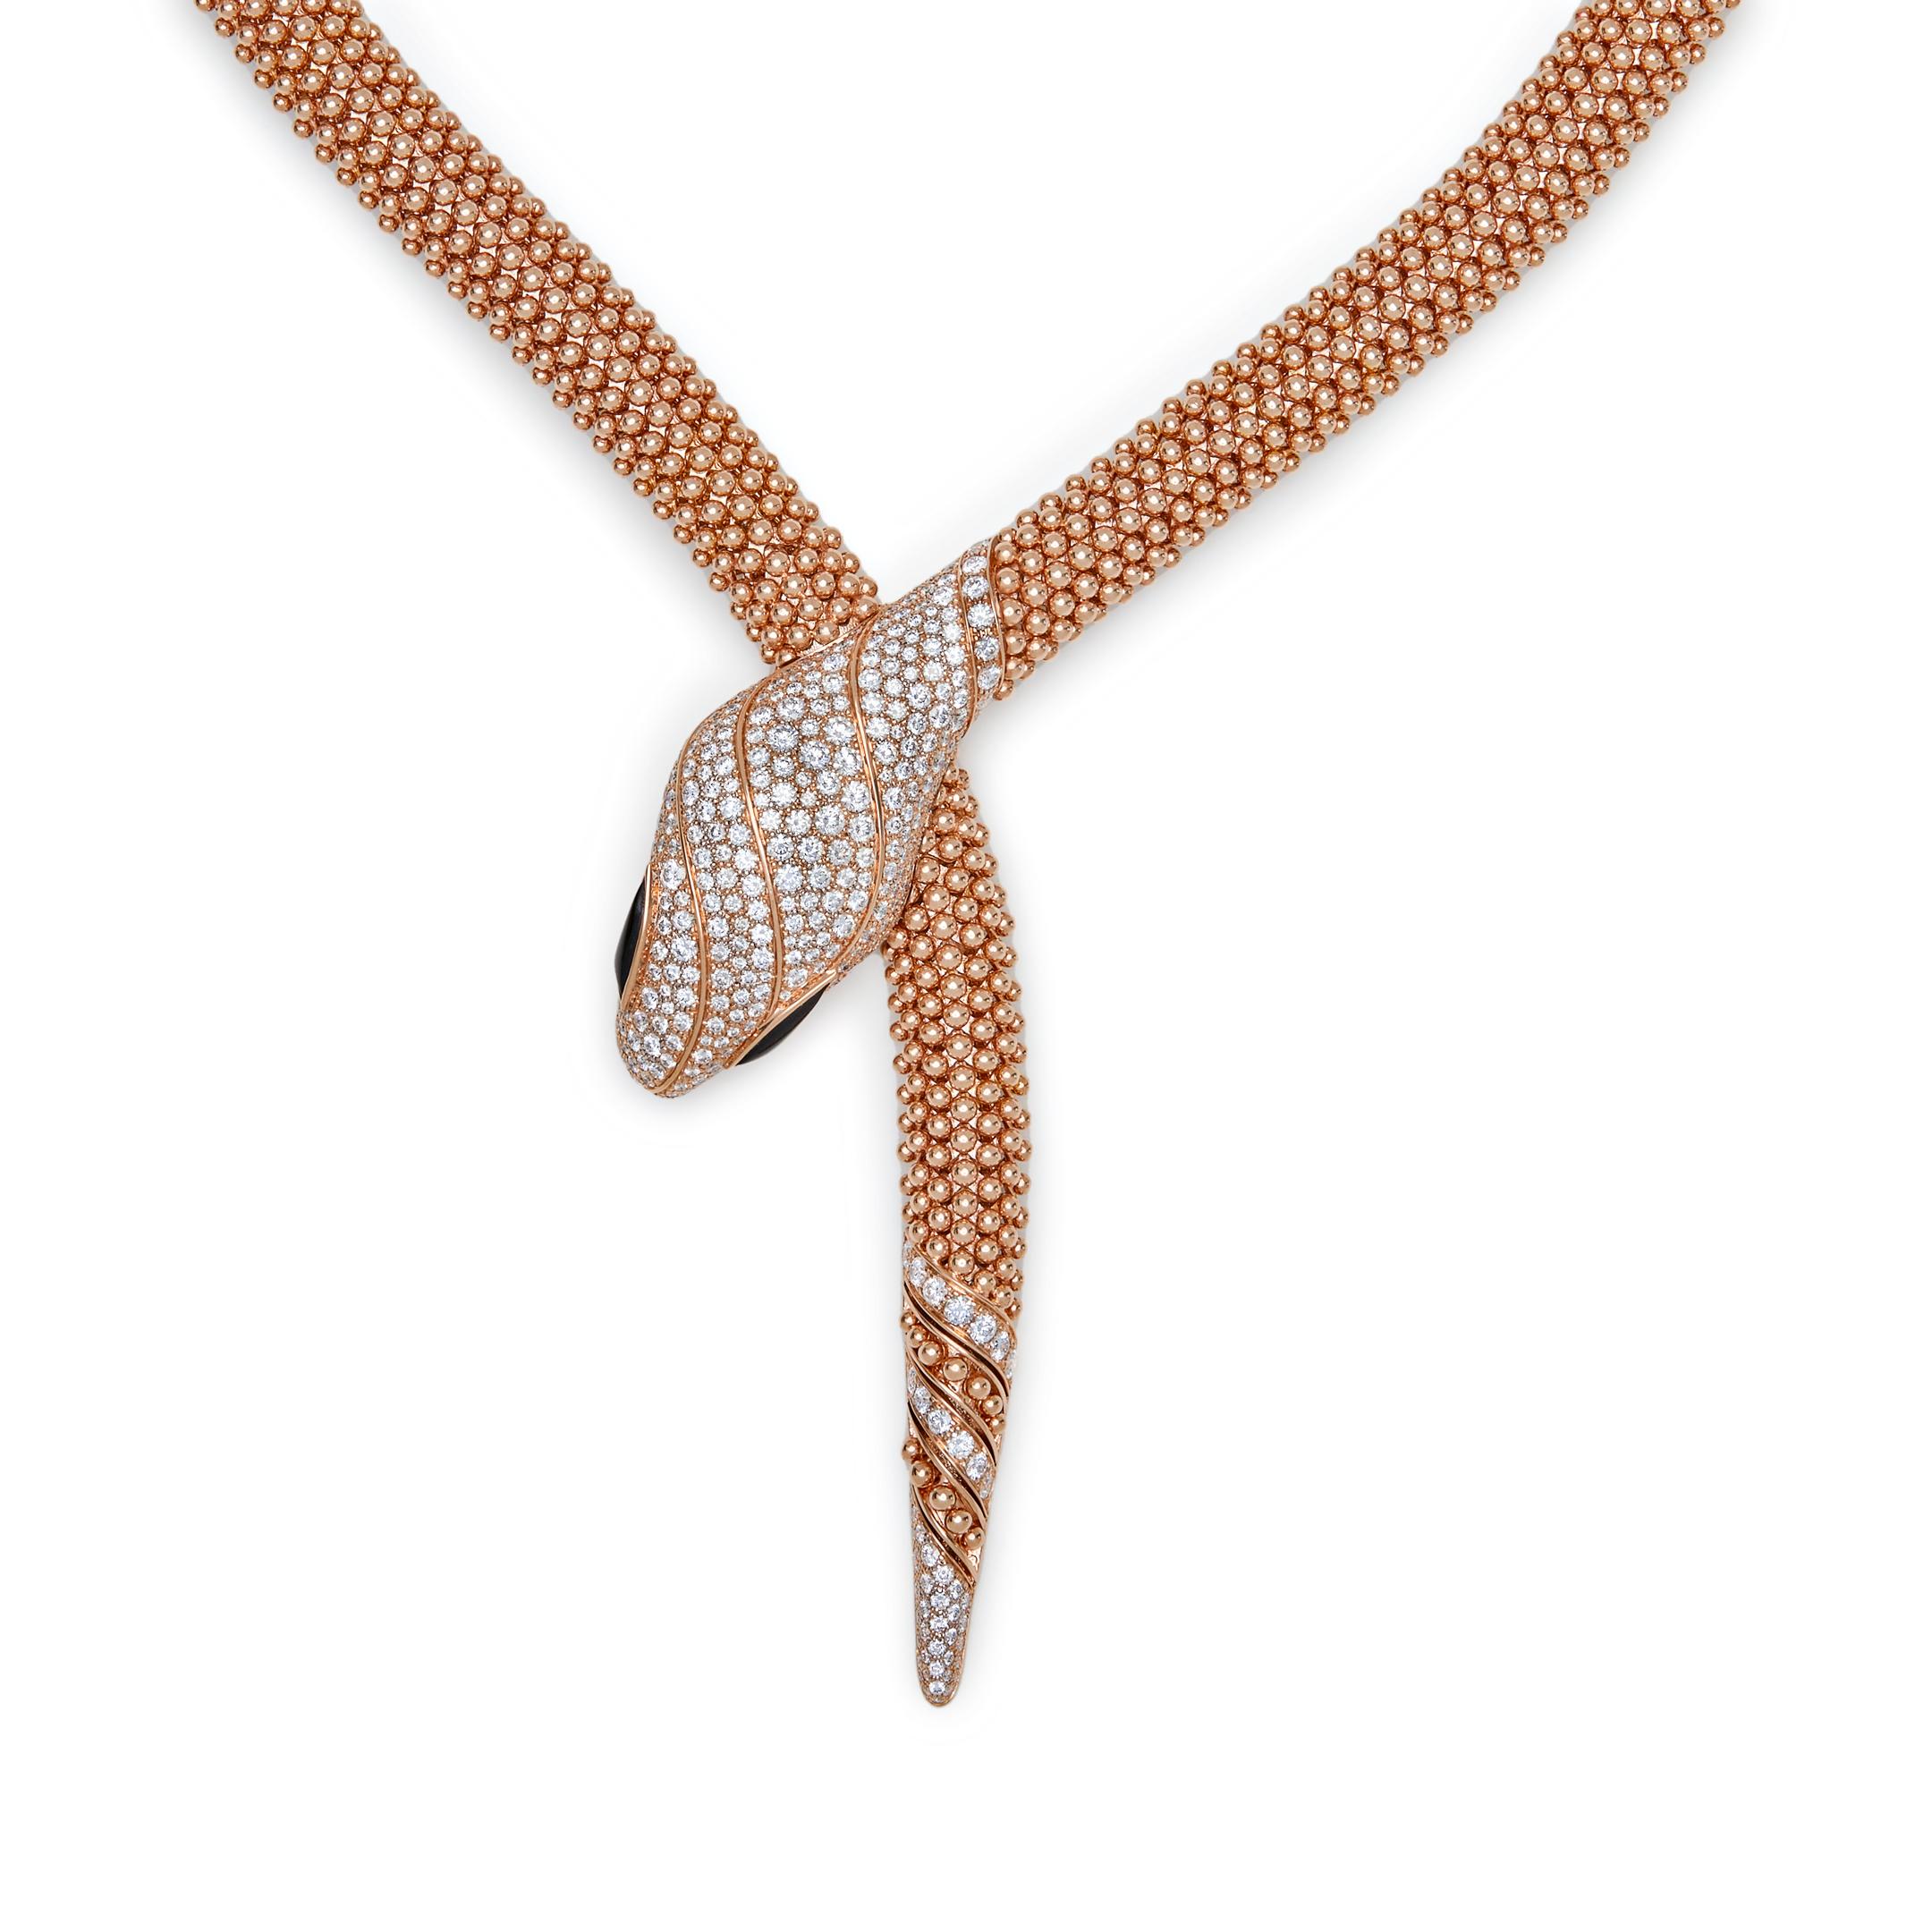 bulgari serpenti necklace price in india